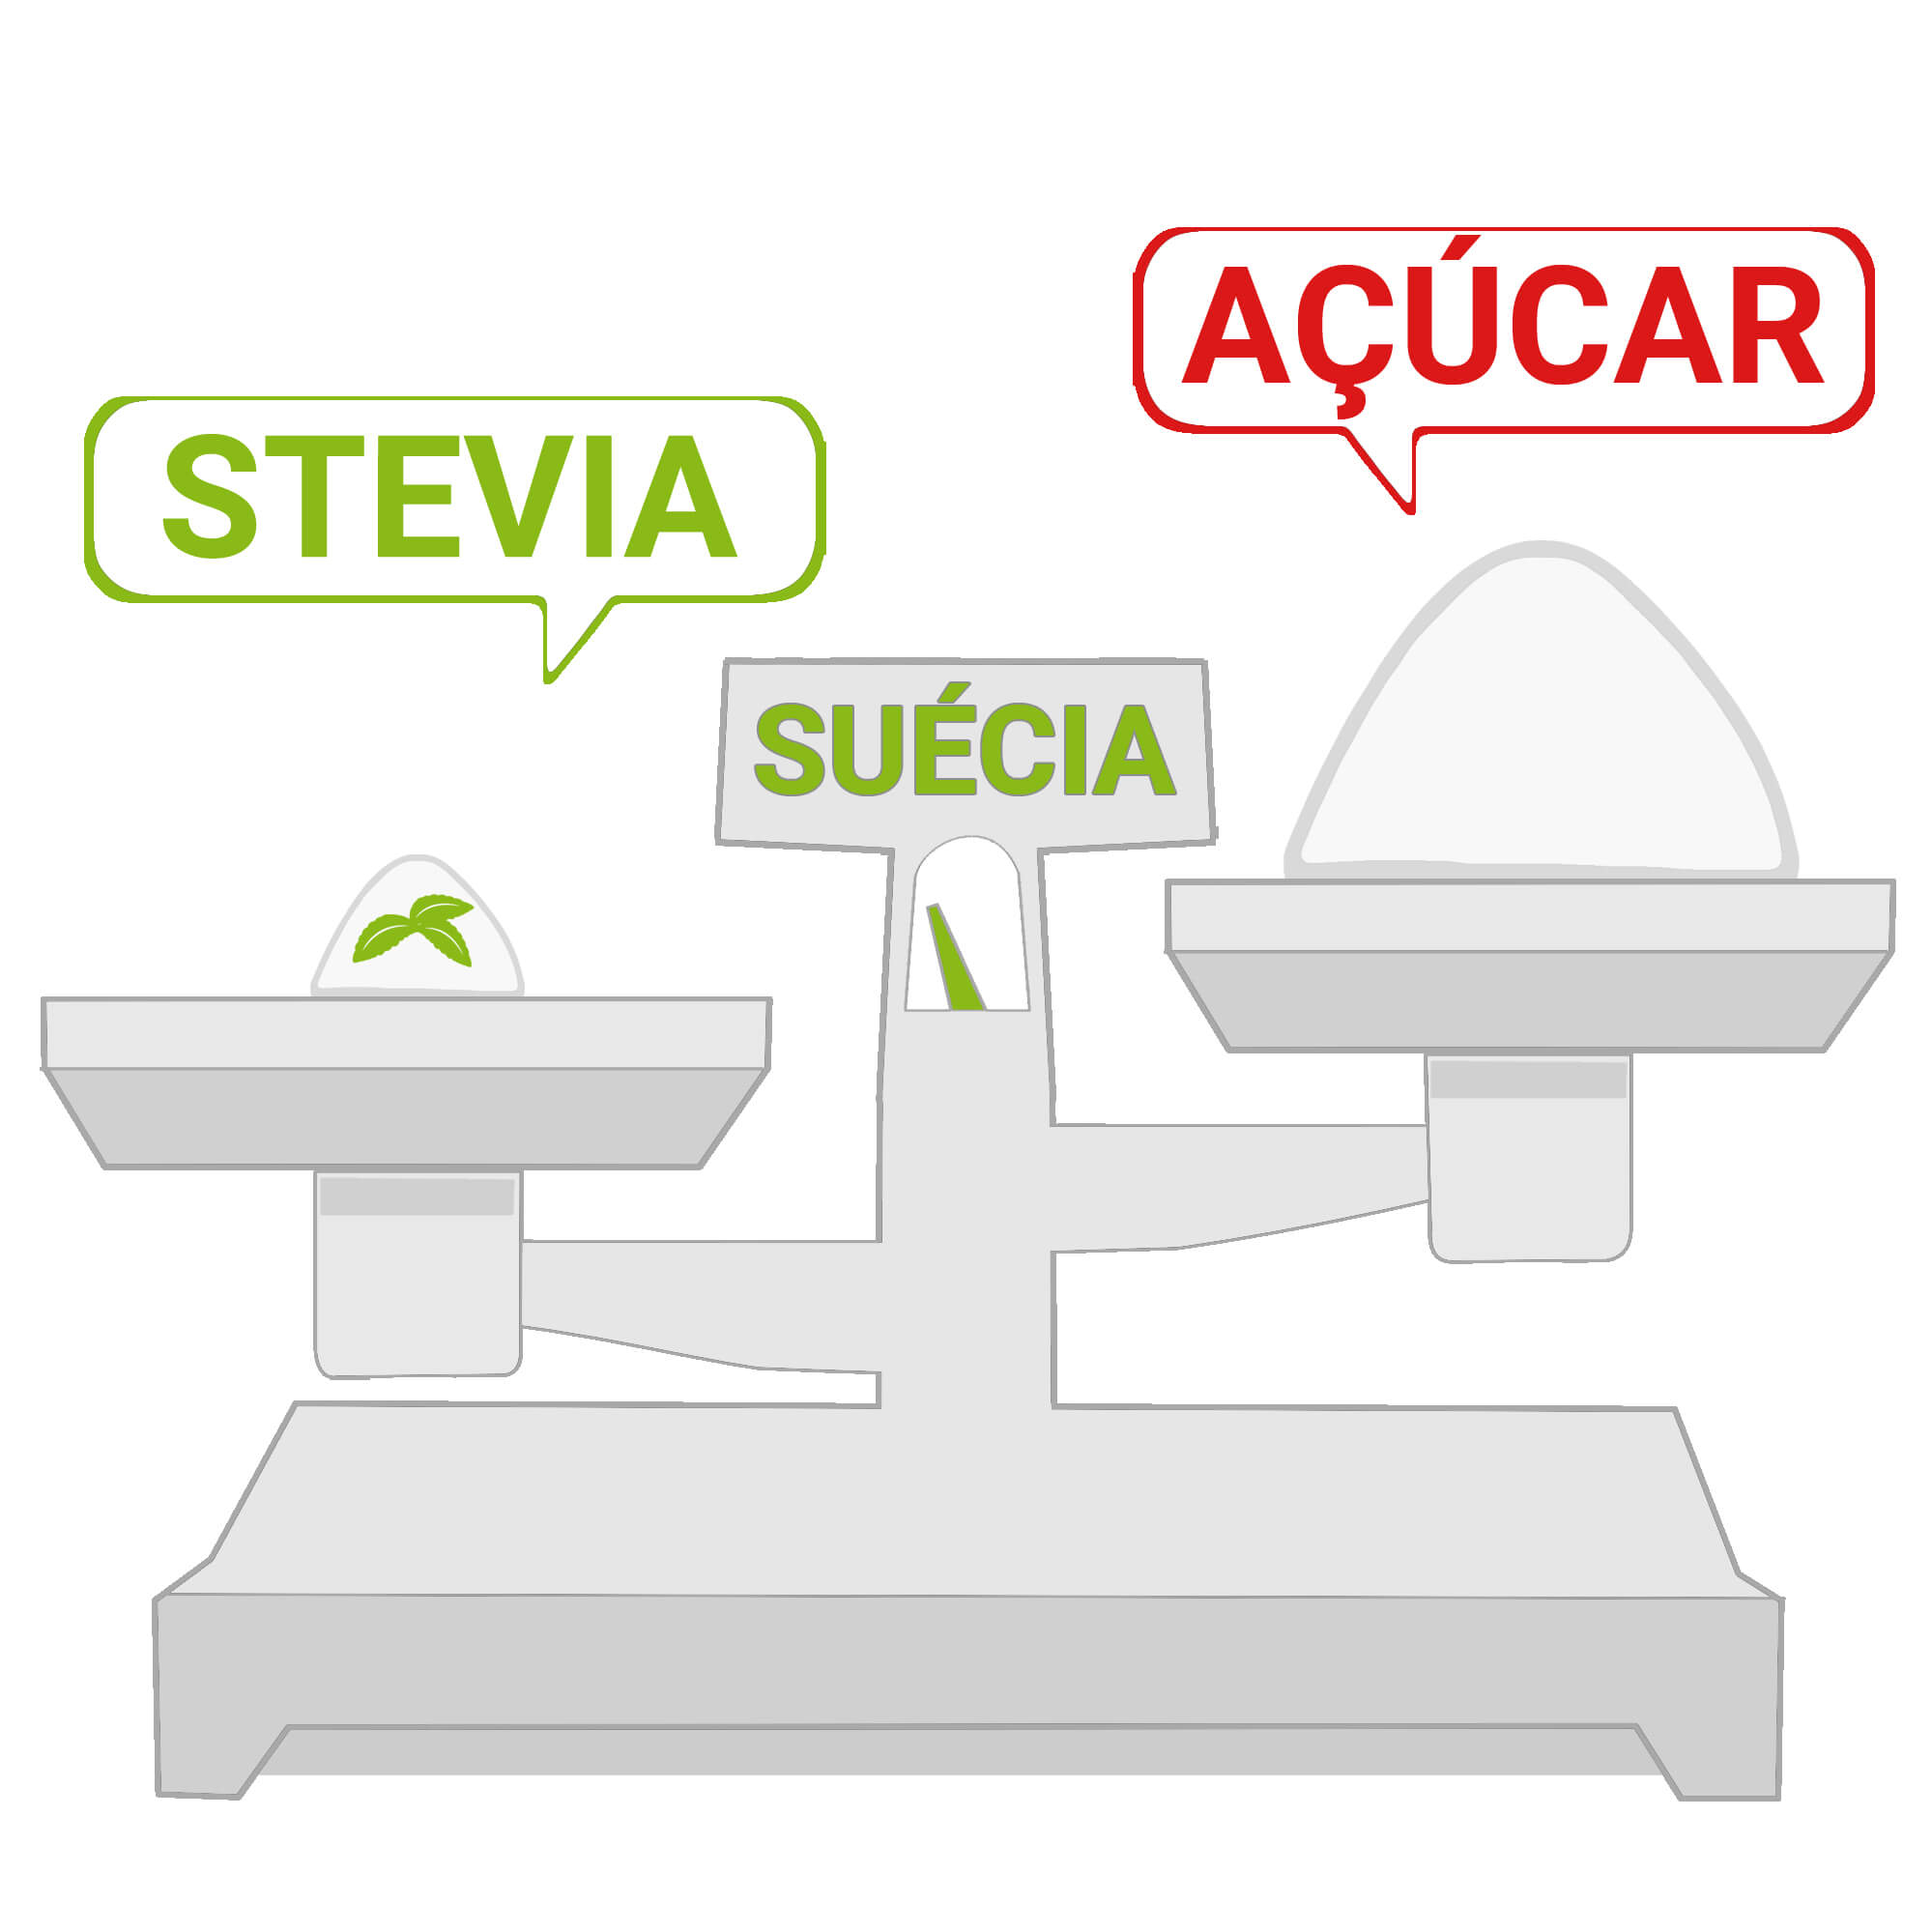 A dosagem correcta de Stevia